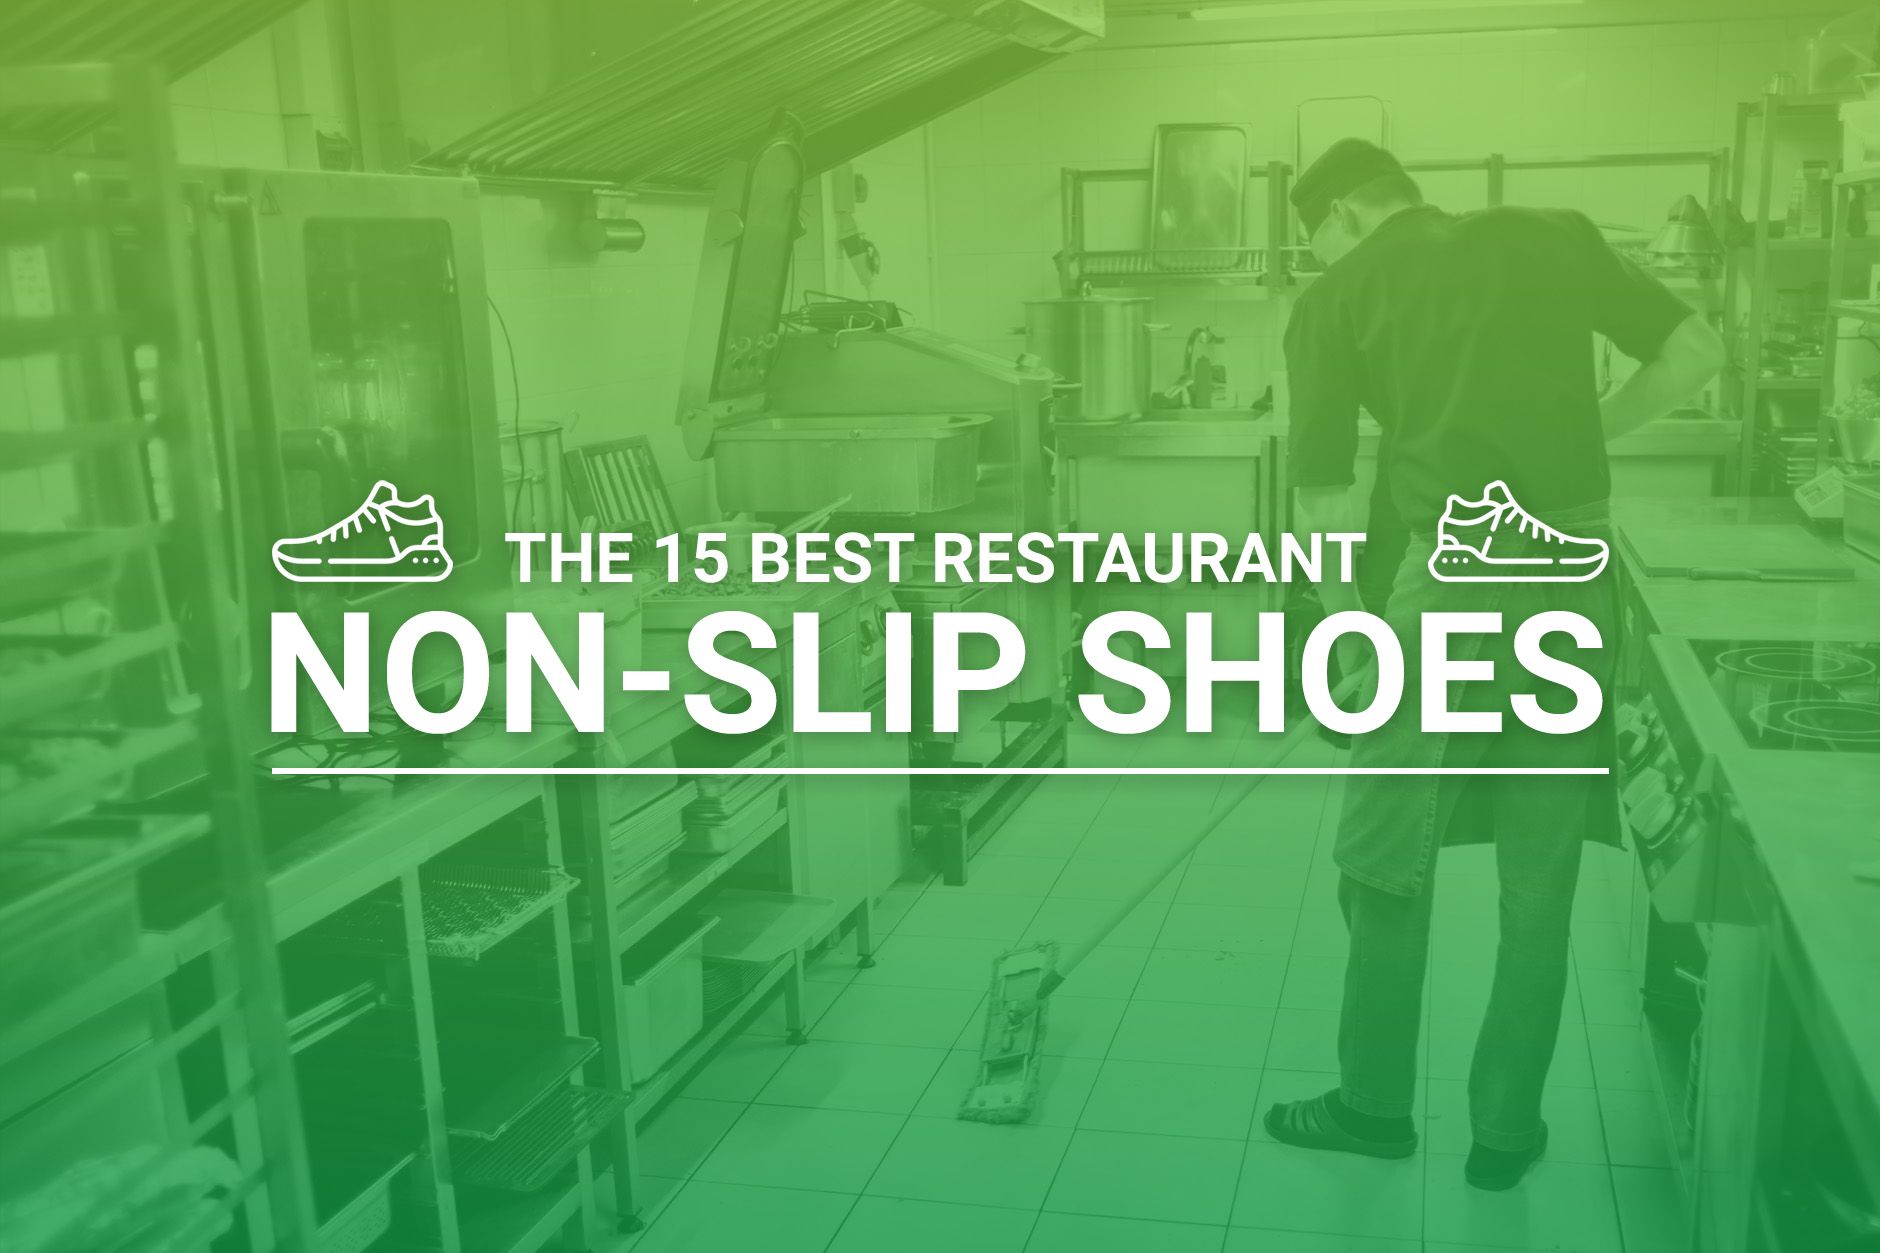 Non Slip Shoes for Women  Best Women's Slip Resistant Restaurant